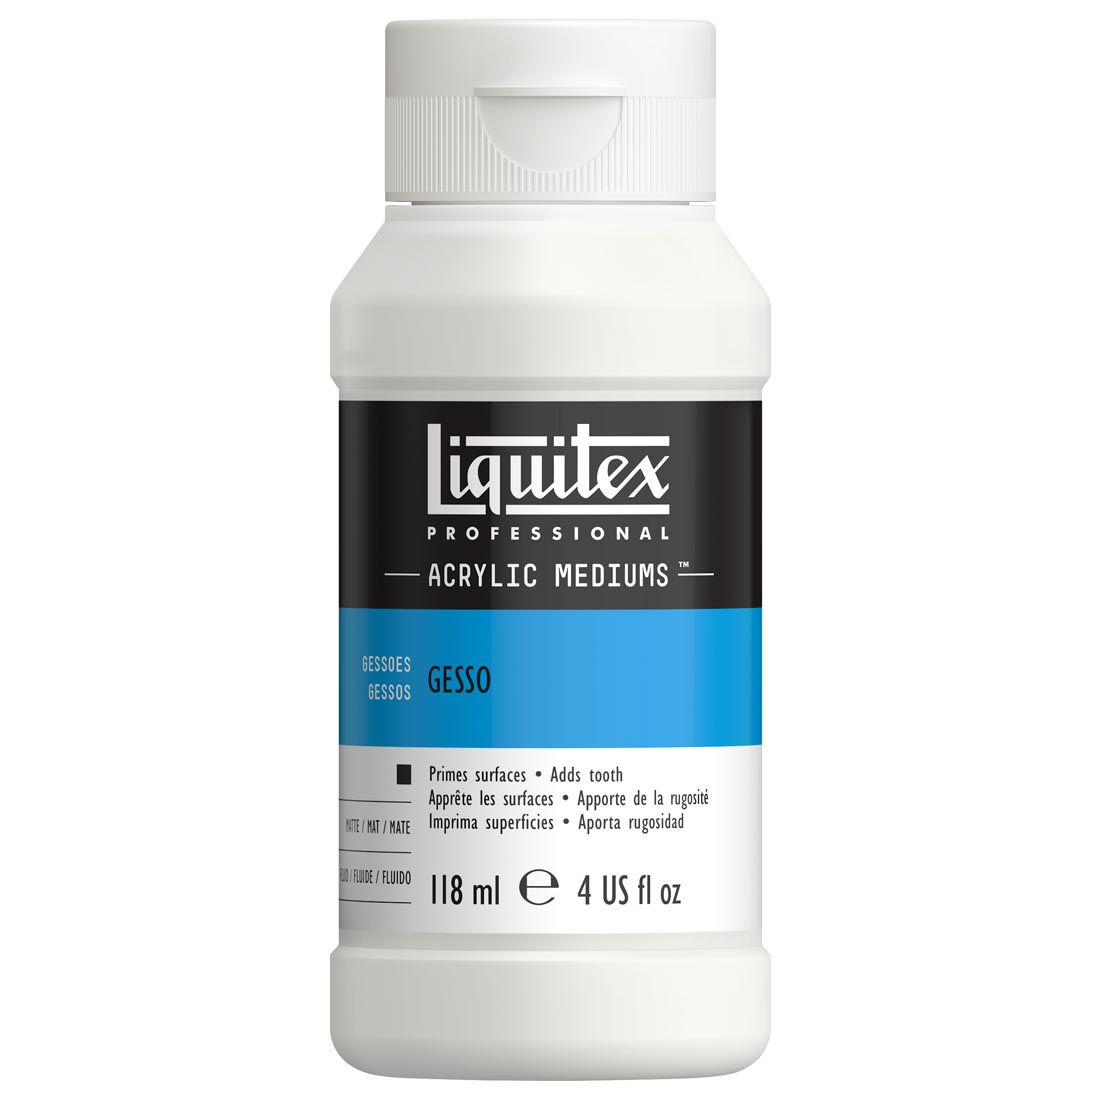 Liquitex Acrylic Gesso, White, 4 oz. Bottle